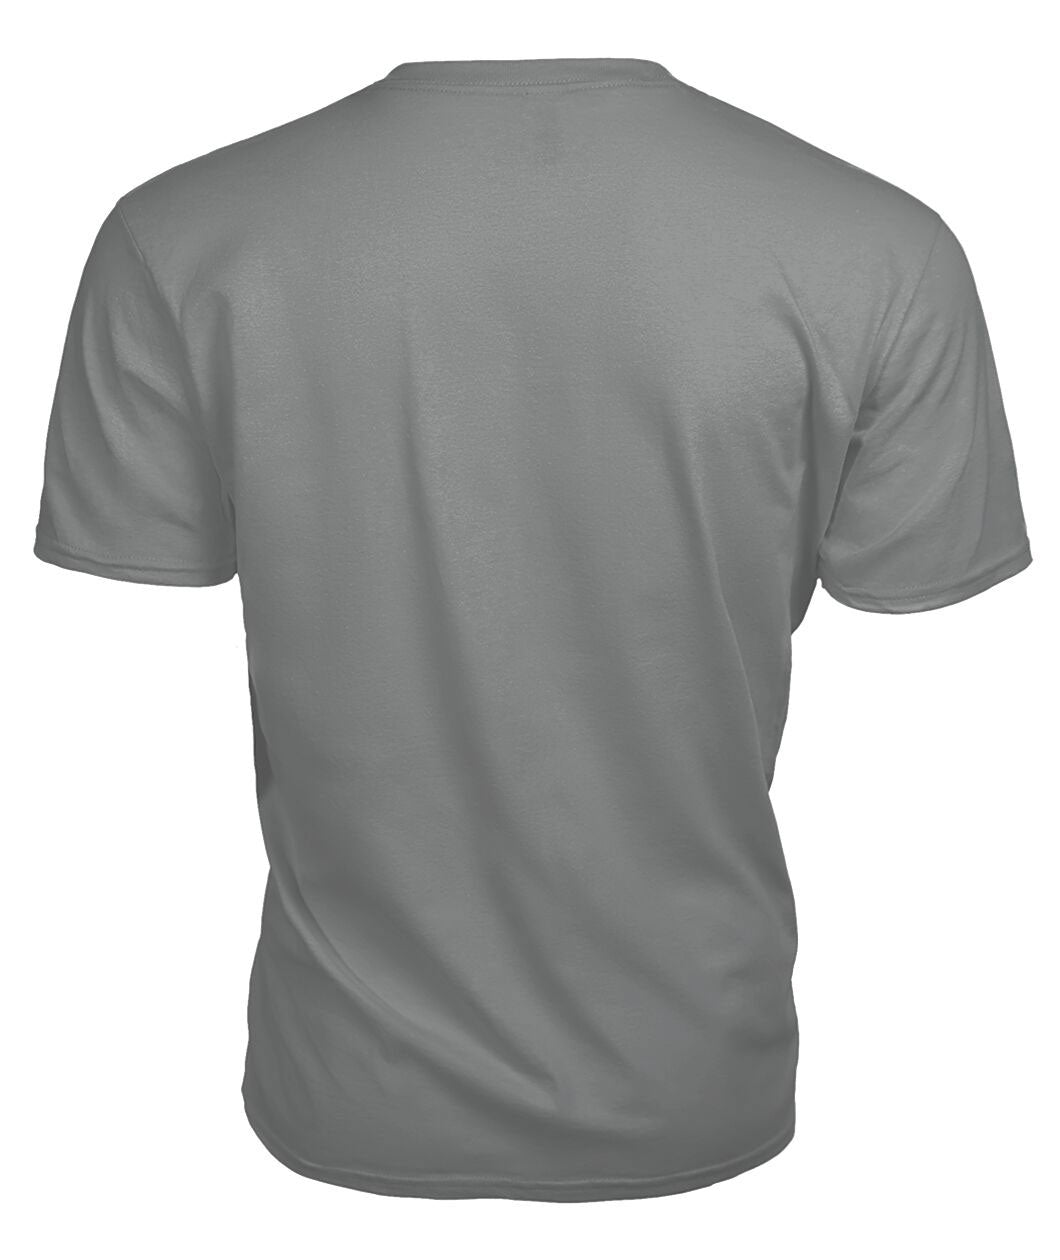 Kinninmont Tartan Crest 2D T-shirt - Blood Runs Through My Veins Style